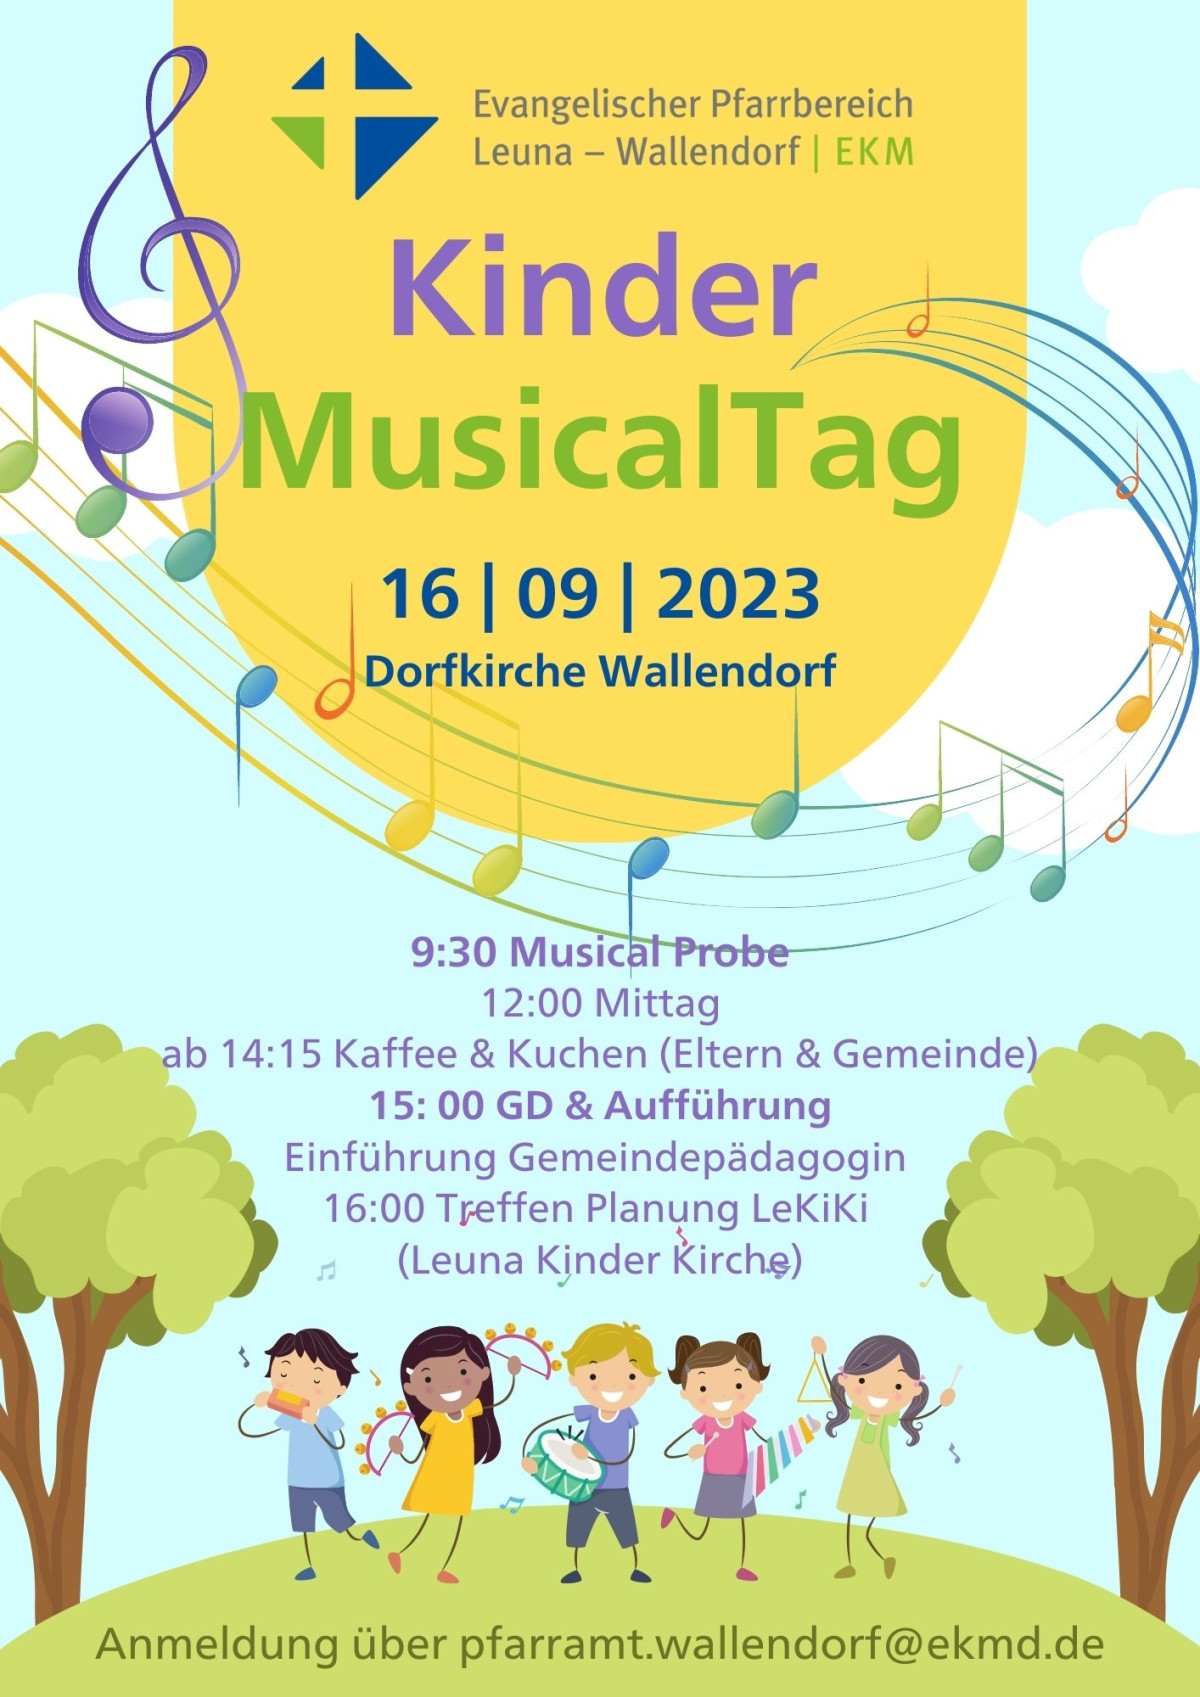 Einladung zum Kinder-Musical-Tag in Wallendorf am 16. September 2023